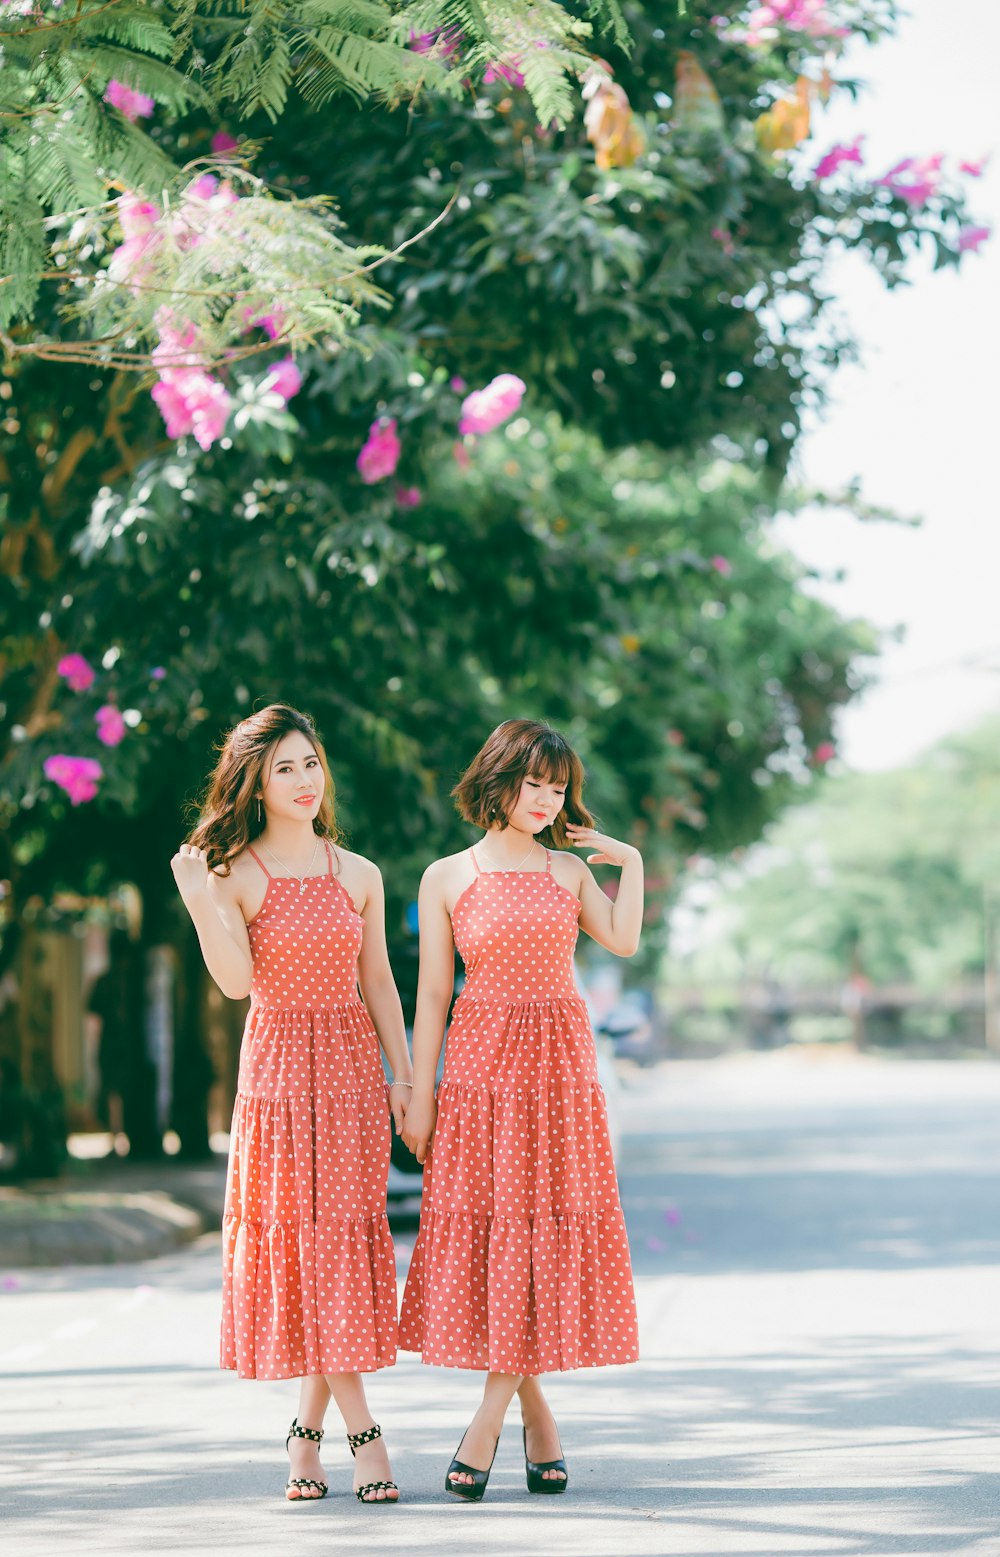 duas mulheres vestindo vestidos de bolinhas vermelhas e brancas em pé na estrada perto de flores de pétalas cor-de-rosa durante o dia